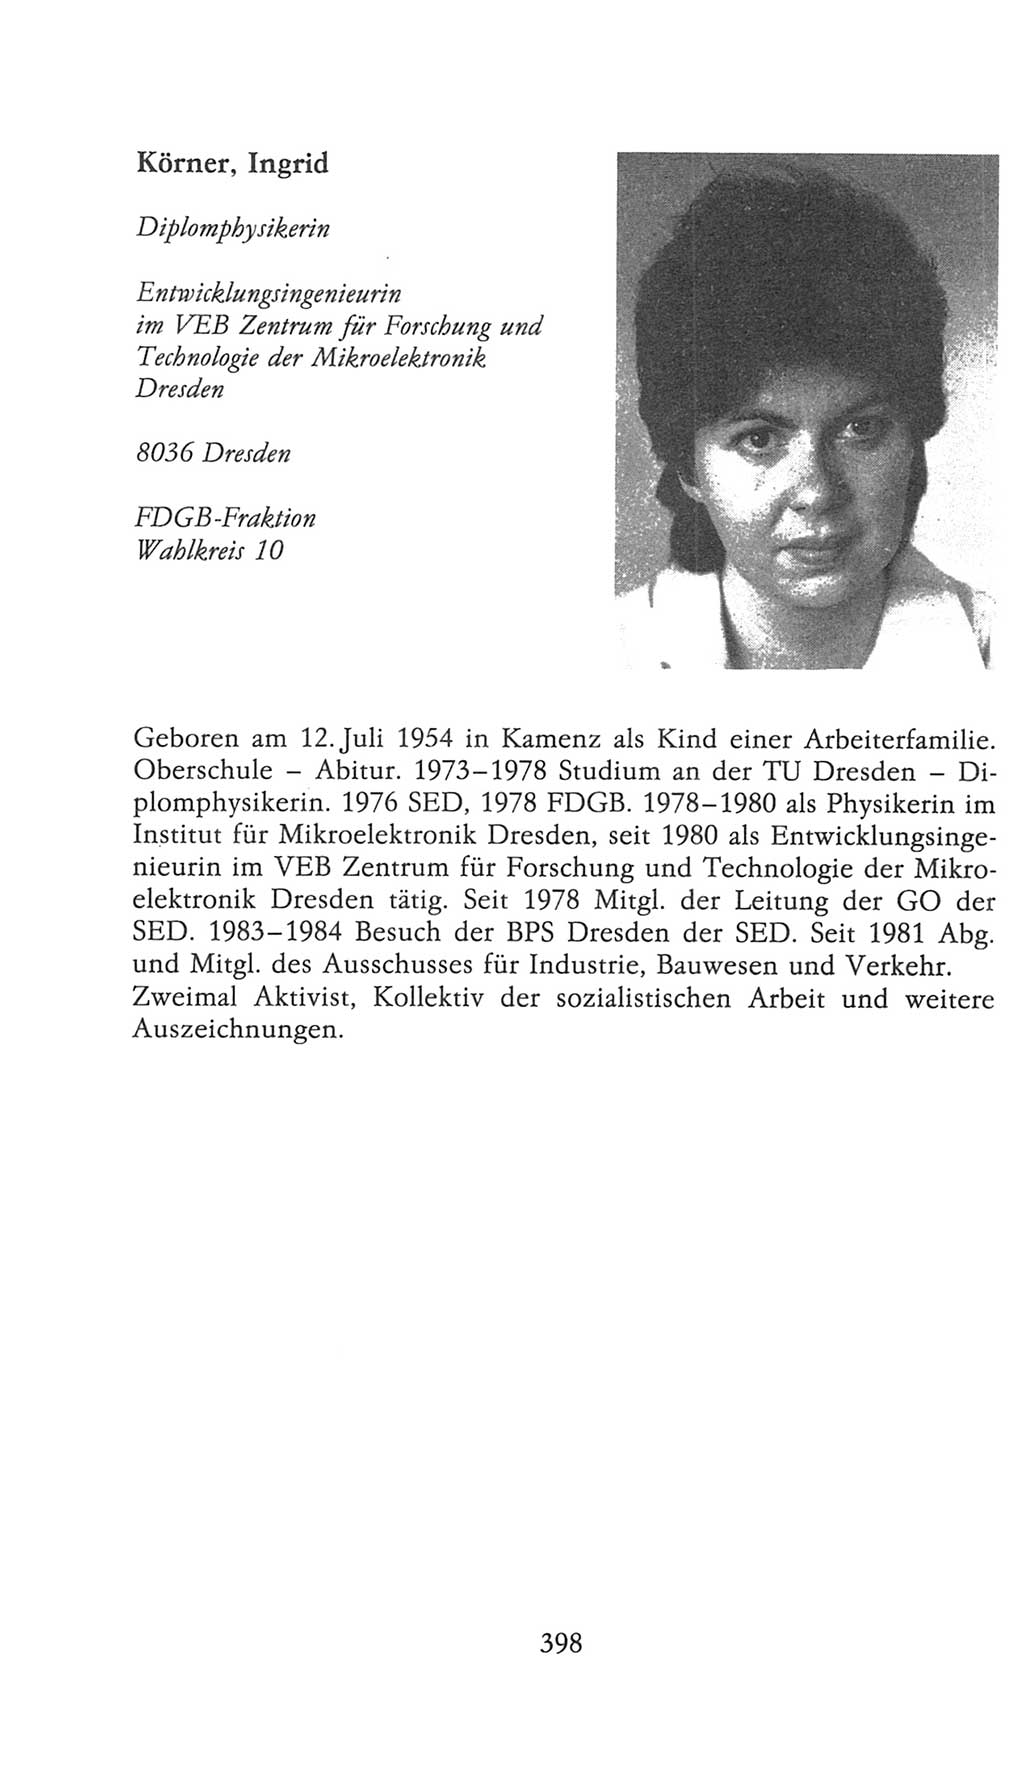 Volkskammer (VK) der Deutschen Demokratischen Republik (DDR), 9. Wahlperiode 1986-1990, Seite 398 (VK. DDR 9. WP. 1986-1990, S. 398)